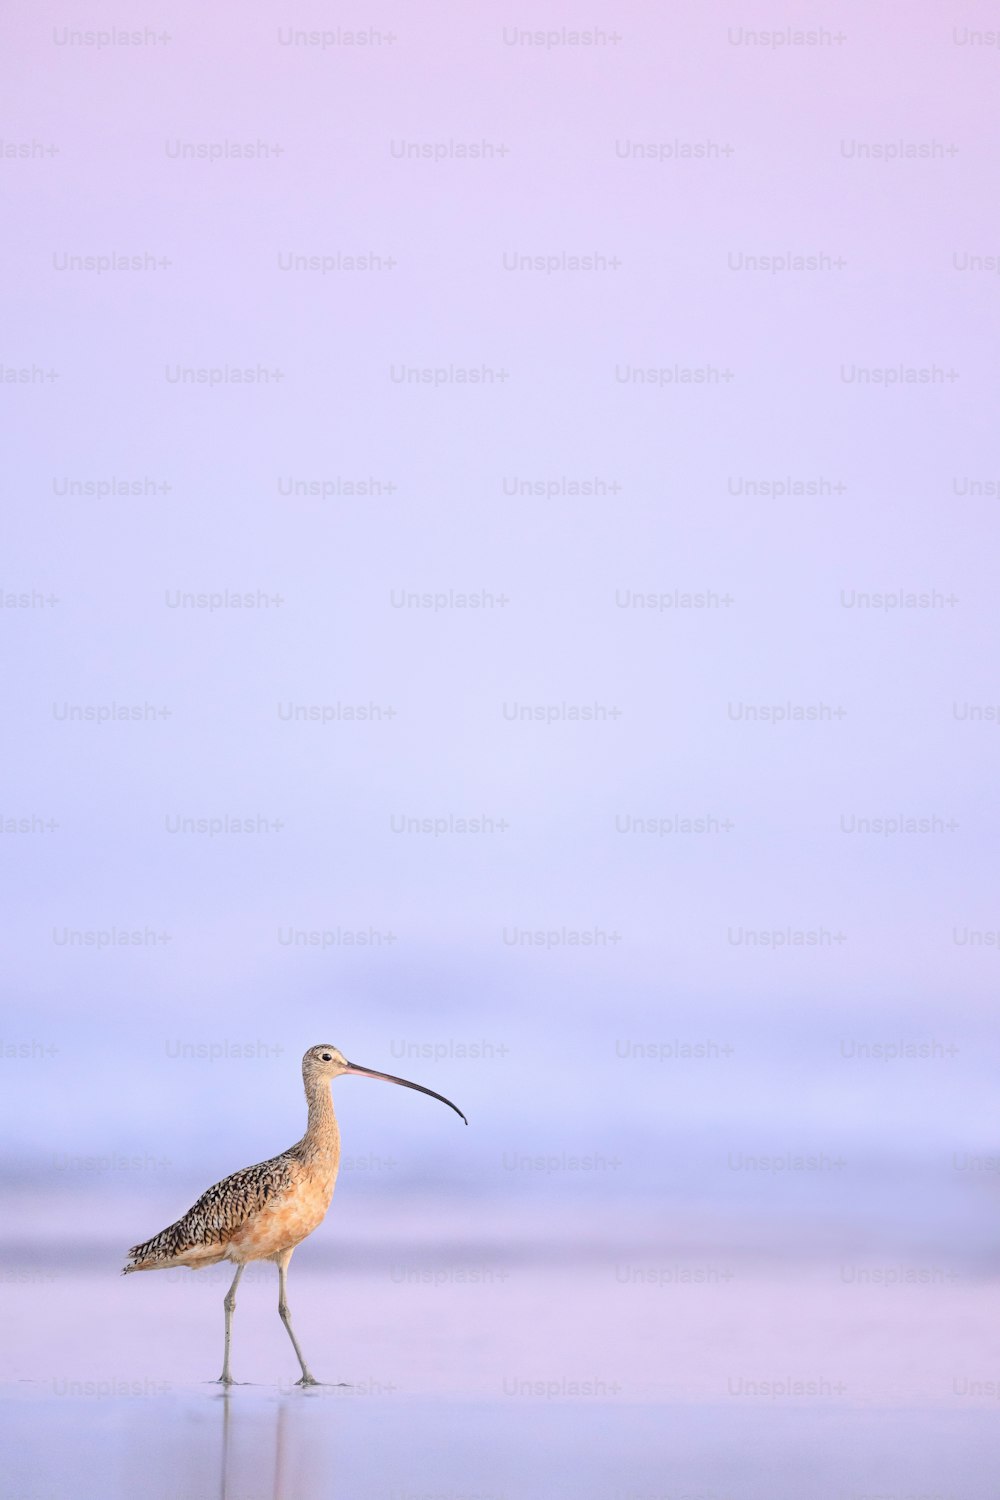 Un pájaro con un pico largo caminando por una playa